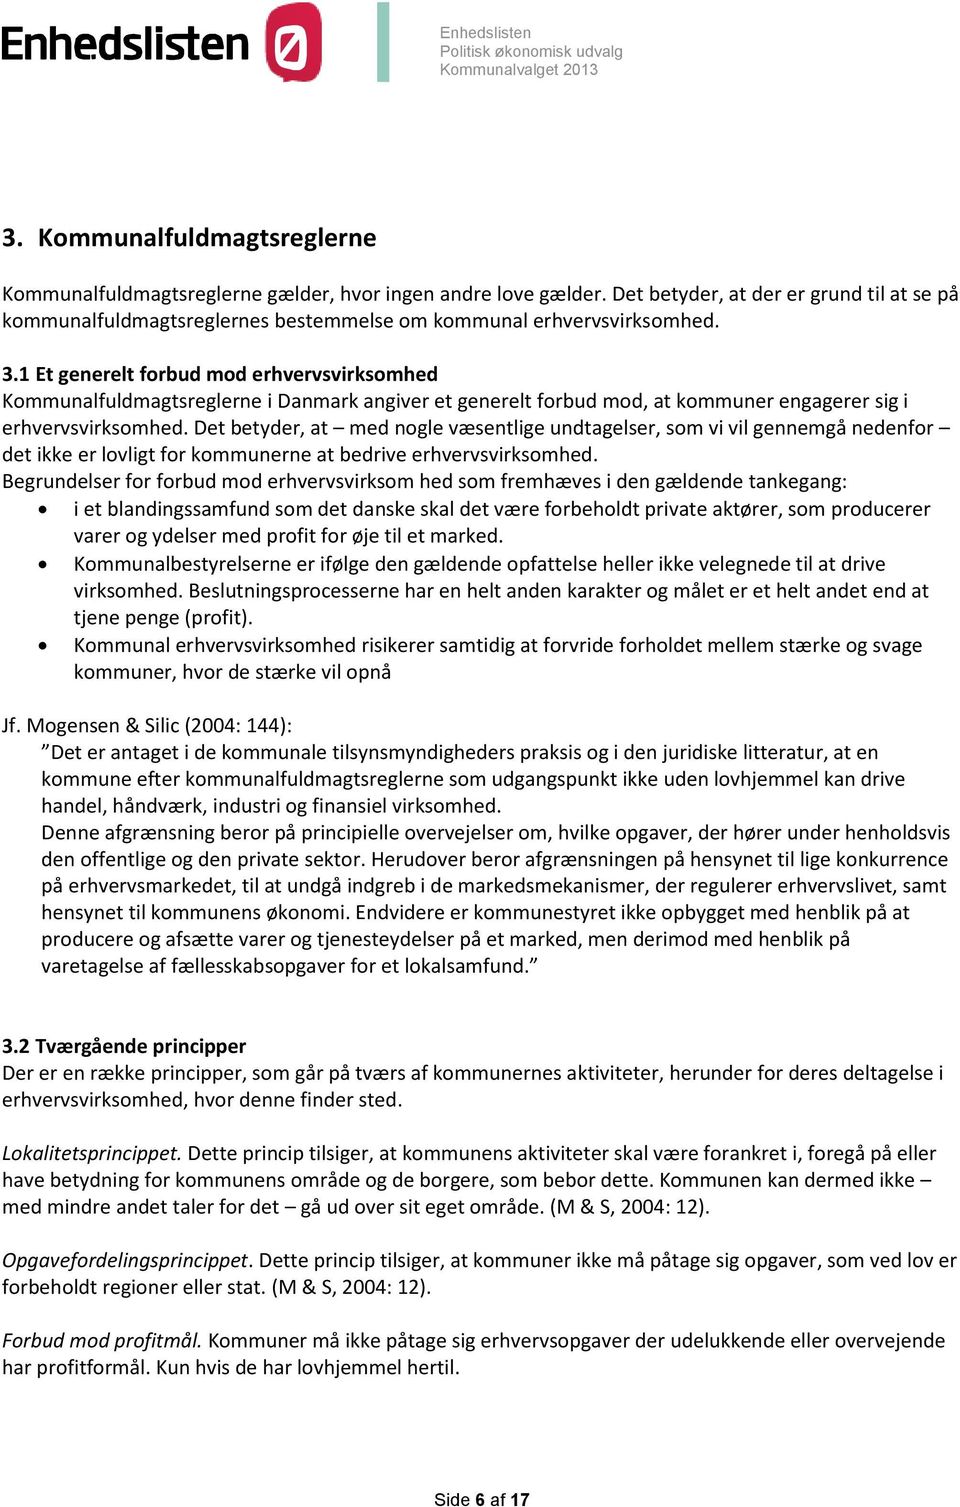 1 Et generelt forbud mod erhvervsvirksomhed Kommunalfuldmagtsreglerne i Danmark angiver et generelt forbud mod, at kommuner engagerer sig i erhvervsvirksomhed.